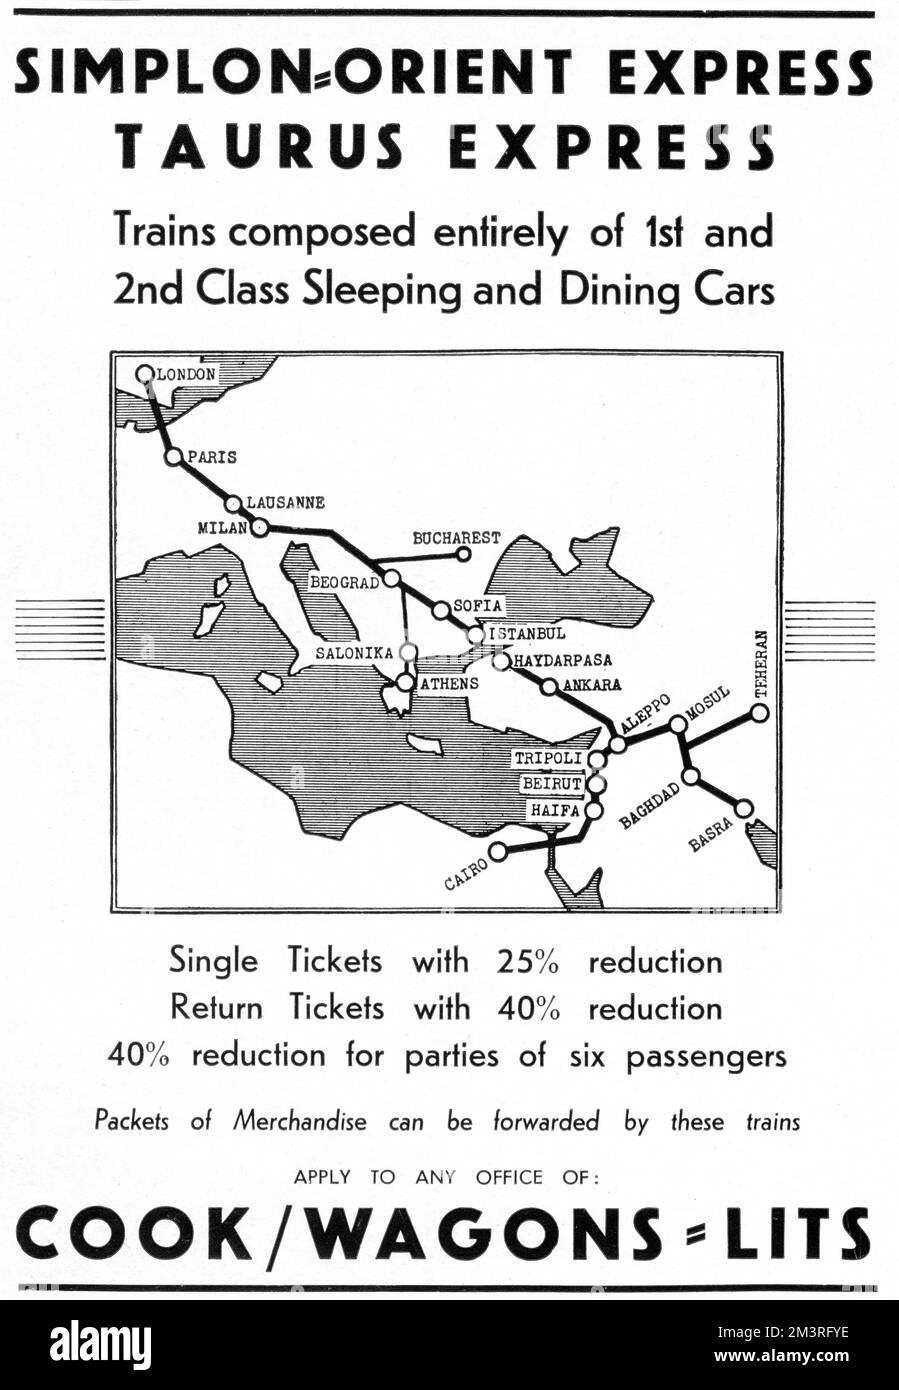 Anuncio para el Simlon-Orient Express y el Taurus Express. El anuncio muestra la ruta entre Londres y Estambul y también las rutas de Haydarpasha (Estambul) a El Cairo, Basora y Teherán. Fecha: 1937 Foto de stock